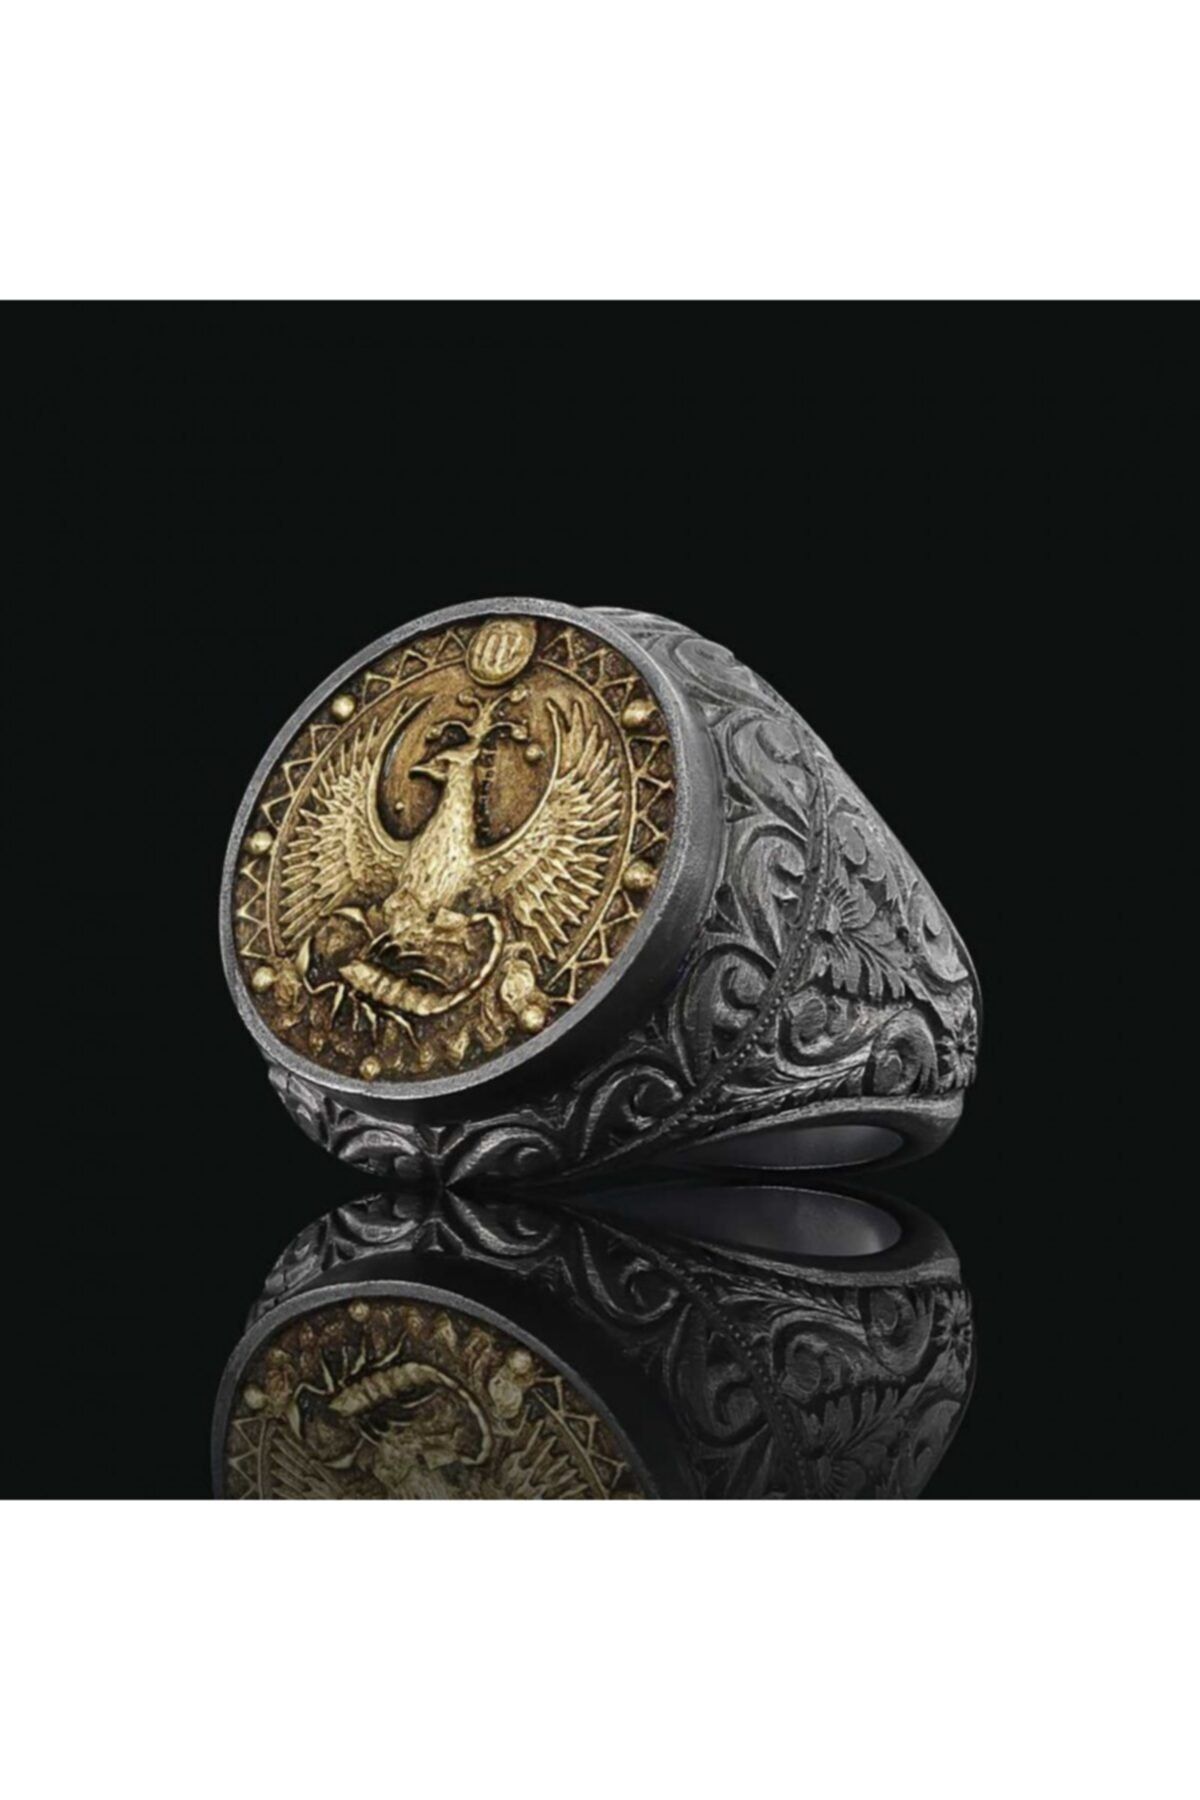 ELMAS İŞ Akrep Burcu Özel Tasarım 925 Ayar Gümüş Üzeri Siyah Rodyum Kaplama Koleksiyon Yüzük